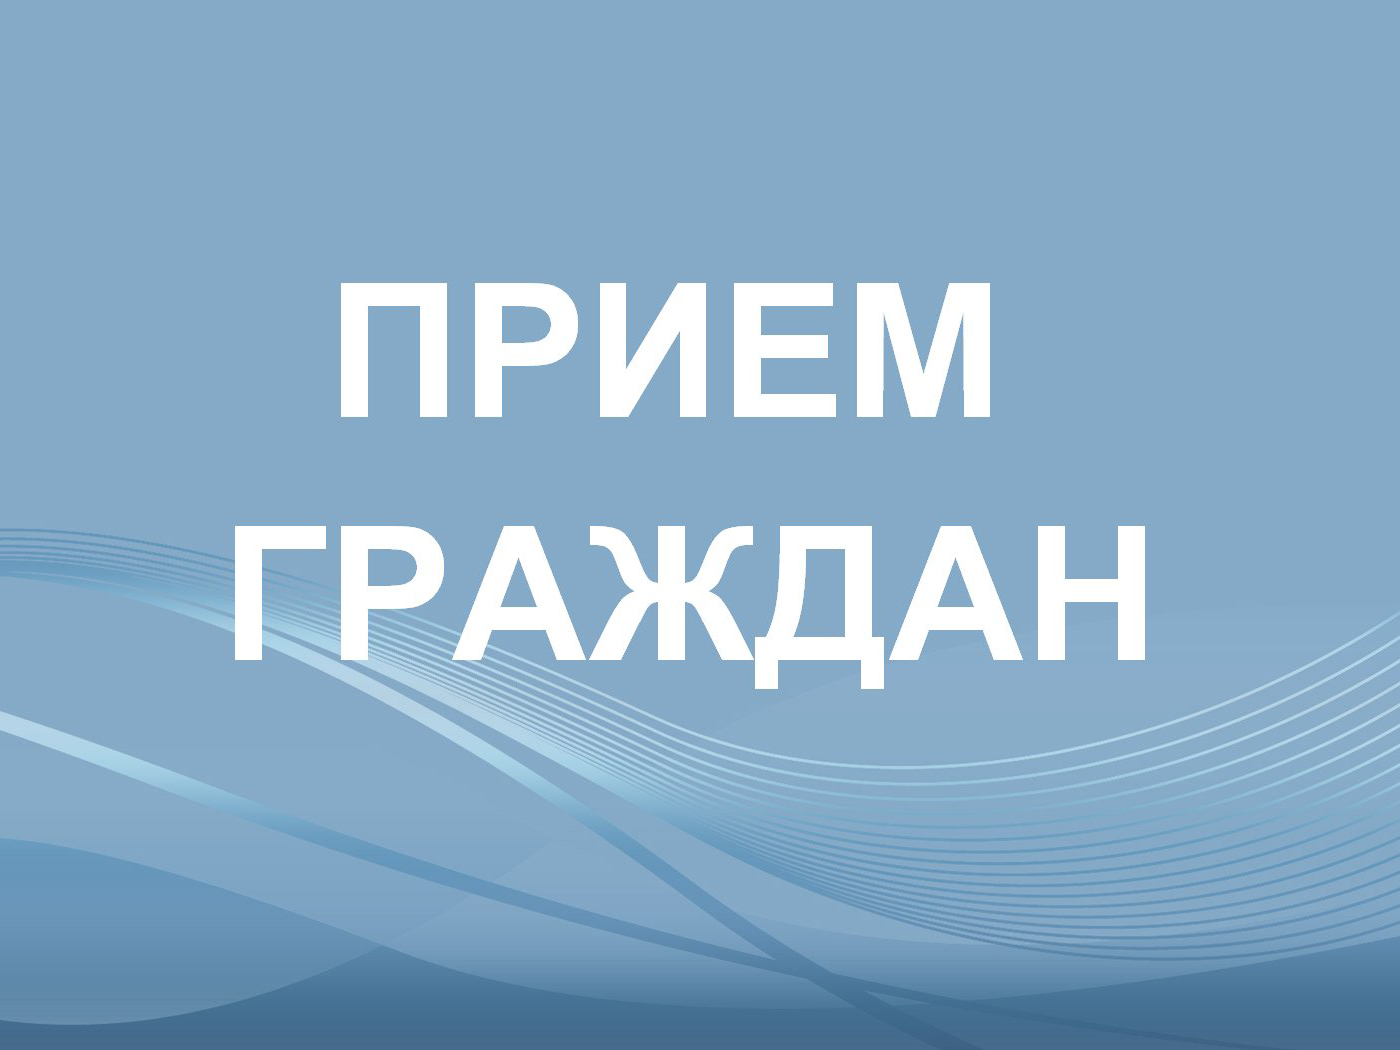 Личный прием граждан проведет заместитель председателя Правительства Воронежской области.